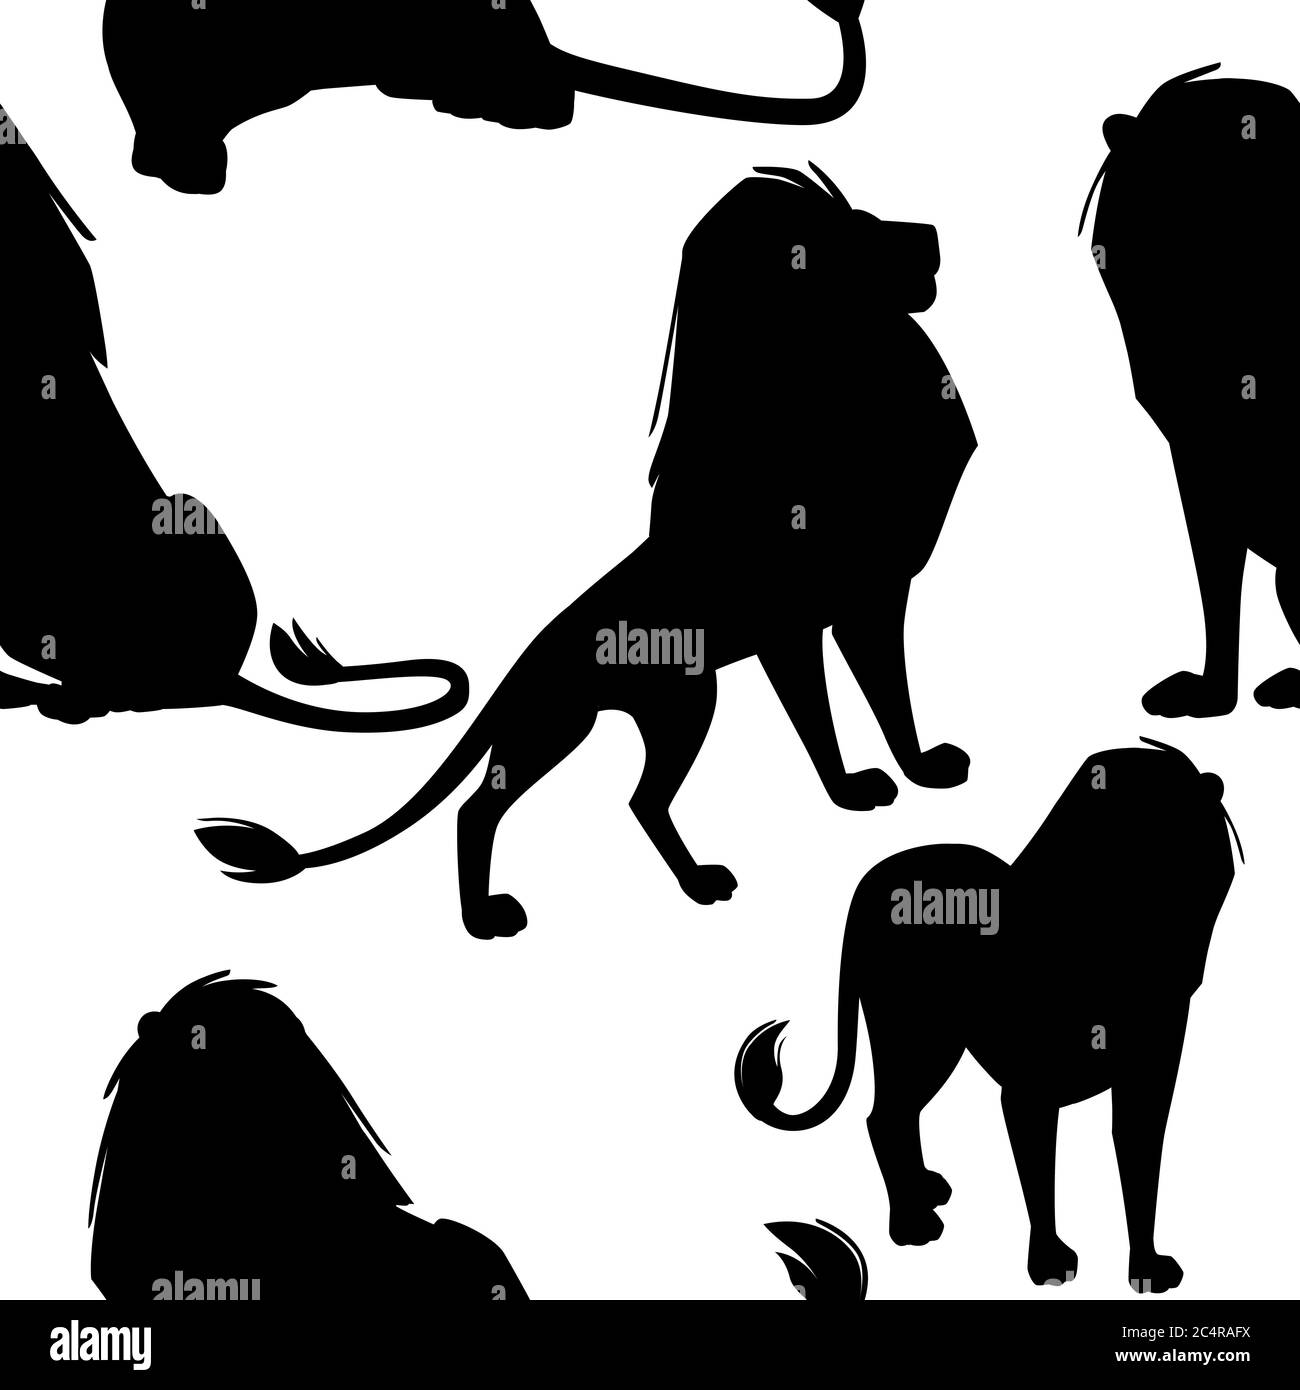 Schwarze Silhouette nahtlose Muster der männlichen stolz leistungsstarke niedliche Löwe Charakter Cartoon-Stil Tier-Design flache Vektor-Illustration auf weißem Hintergrund Stock Vektor